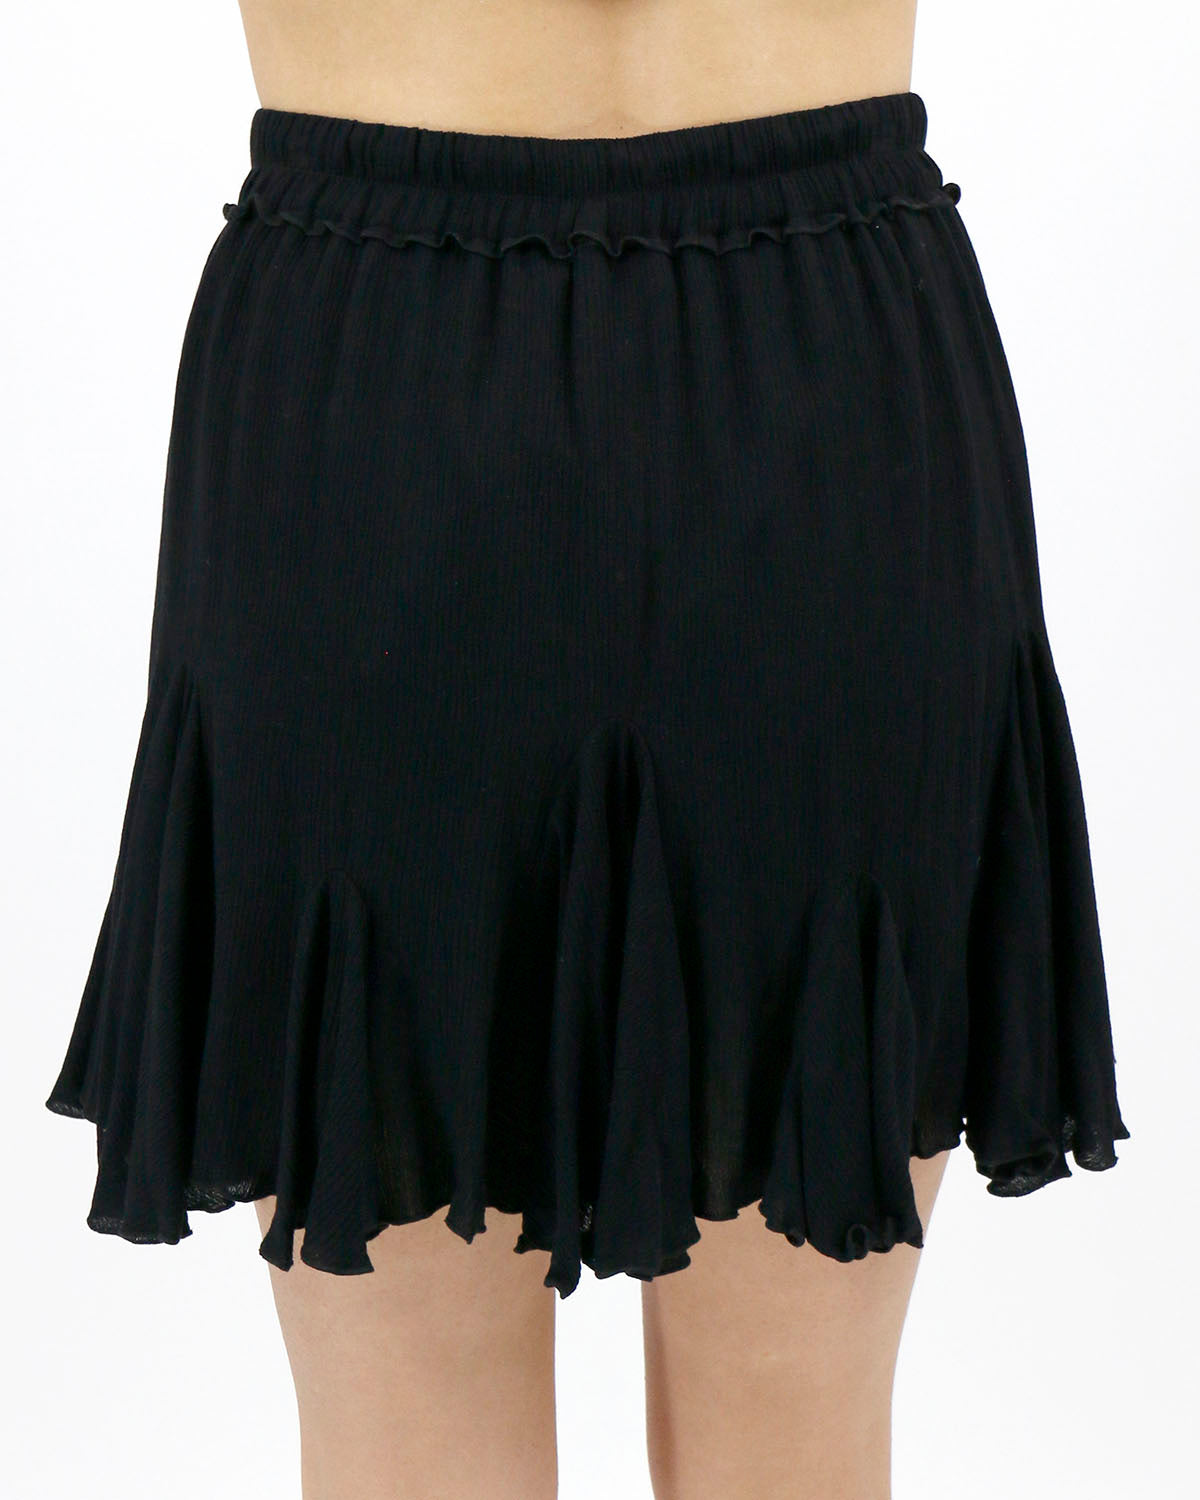 back view stock shot black pull on flutter skirt elastic waistband